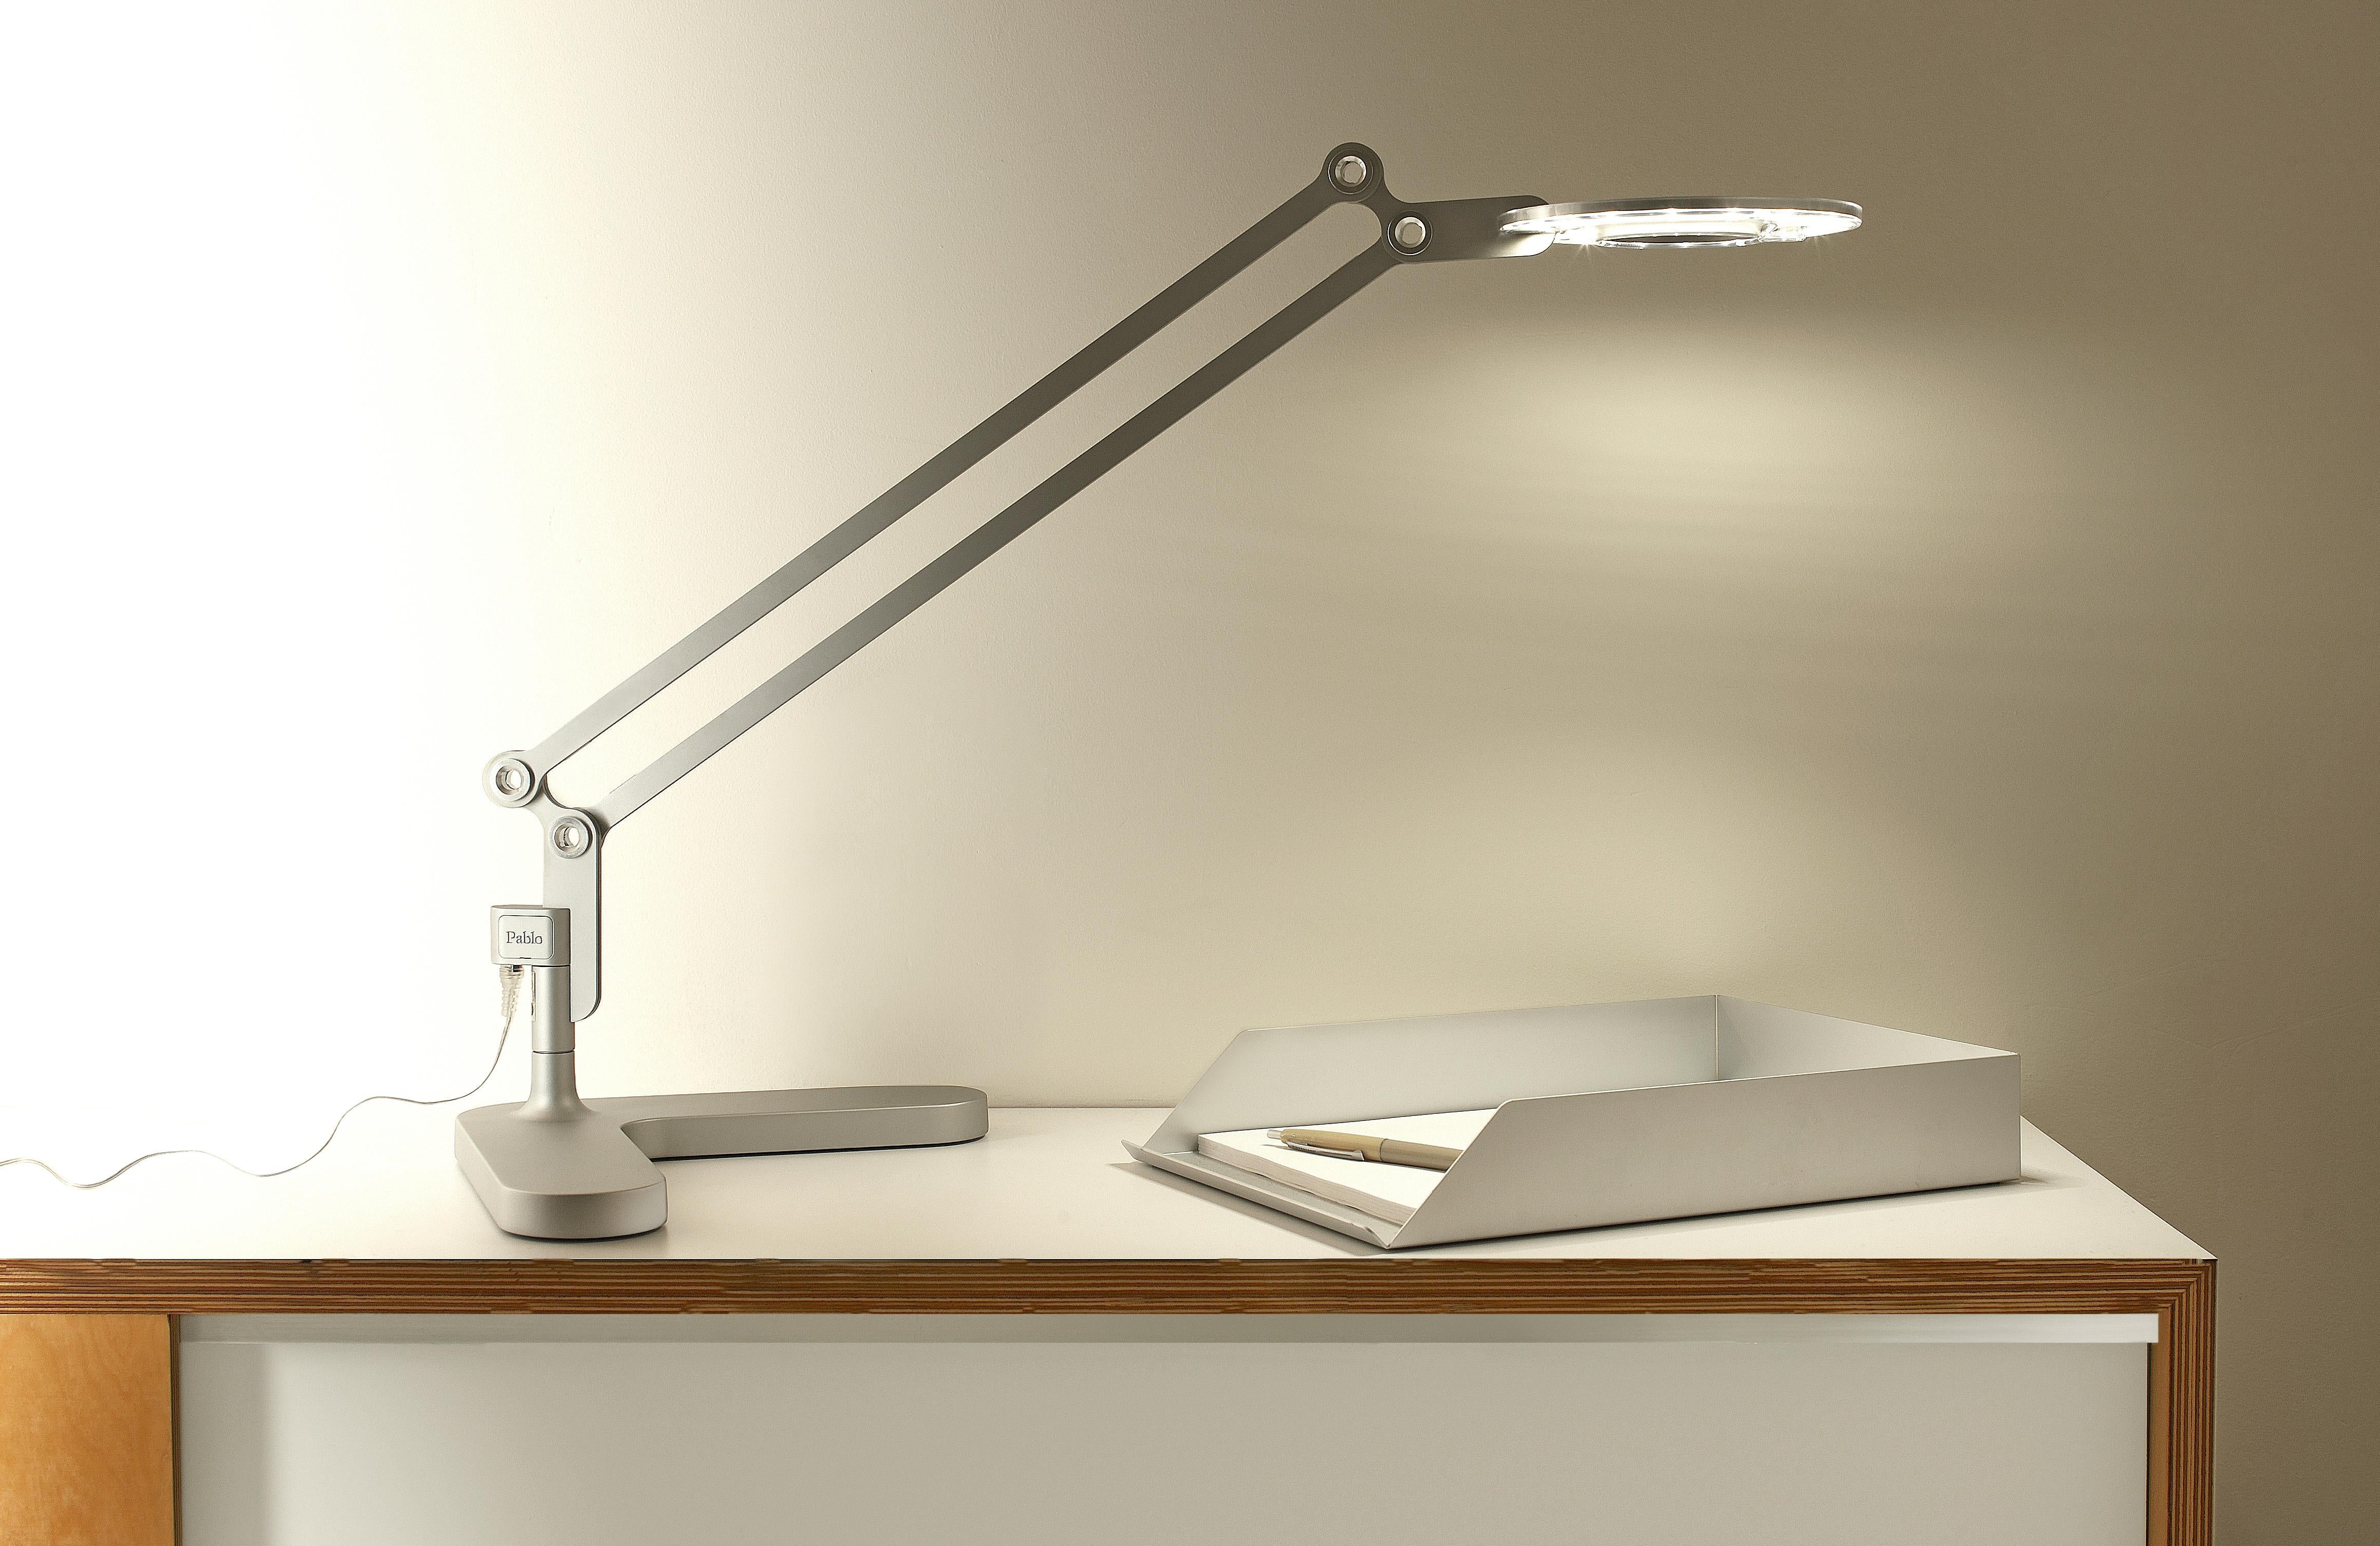 pablo designs link desk lamp